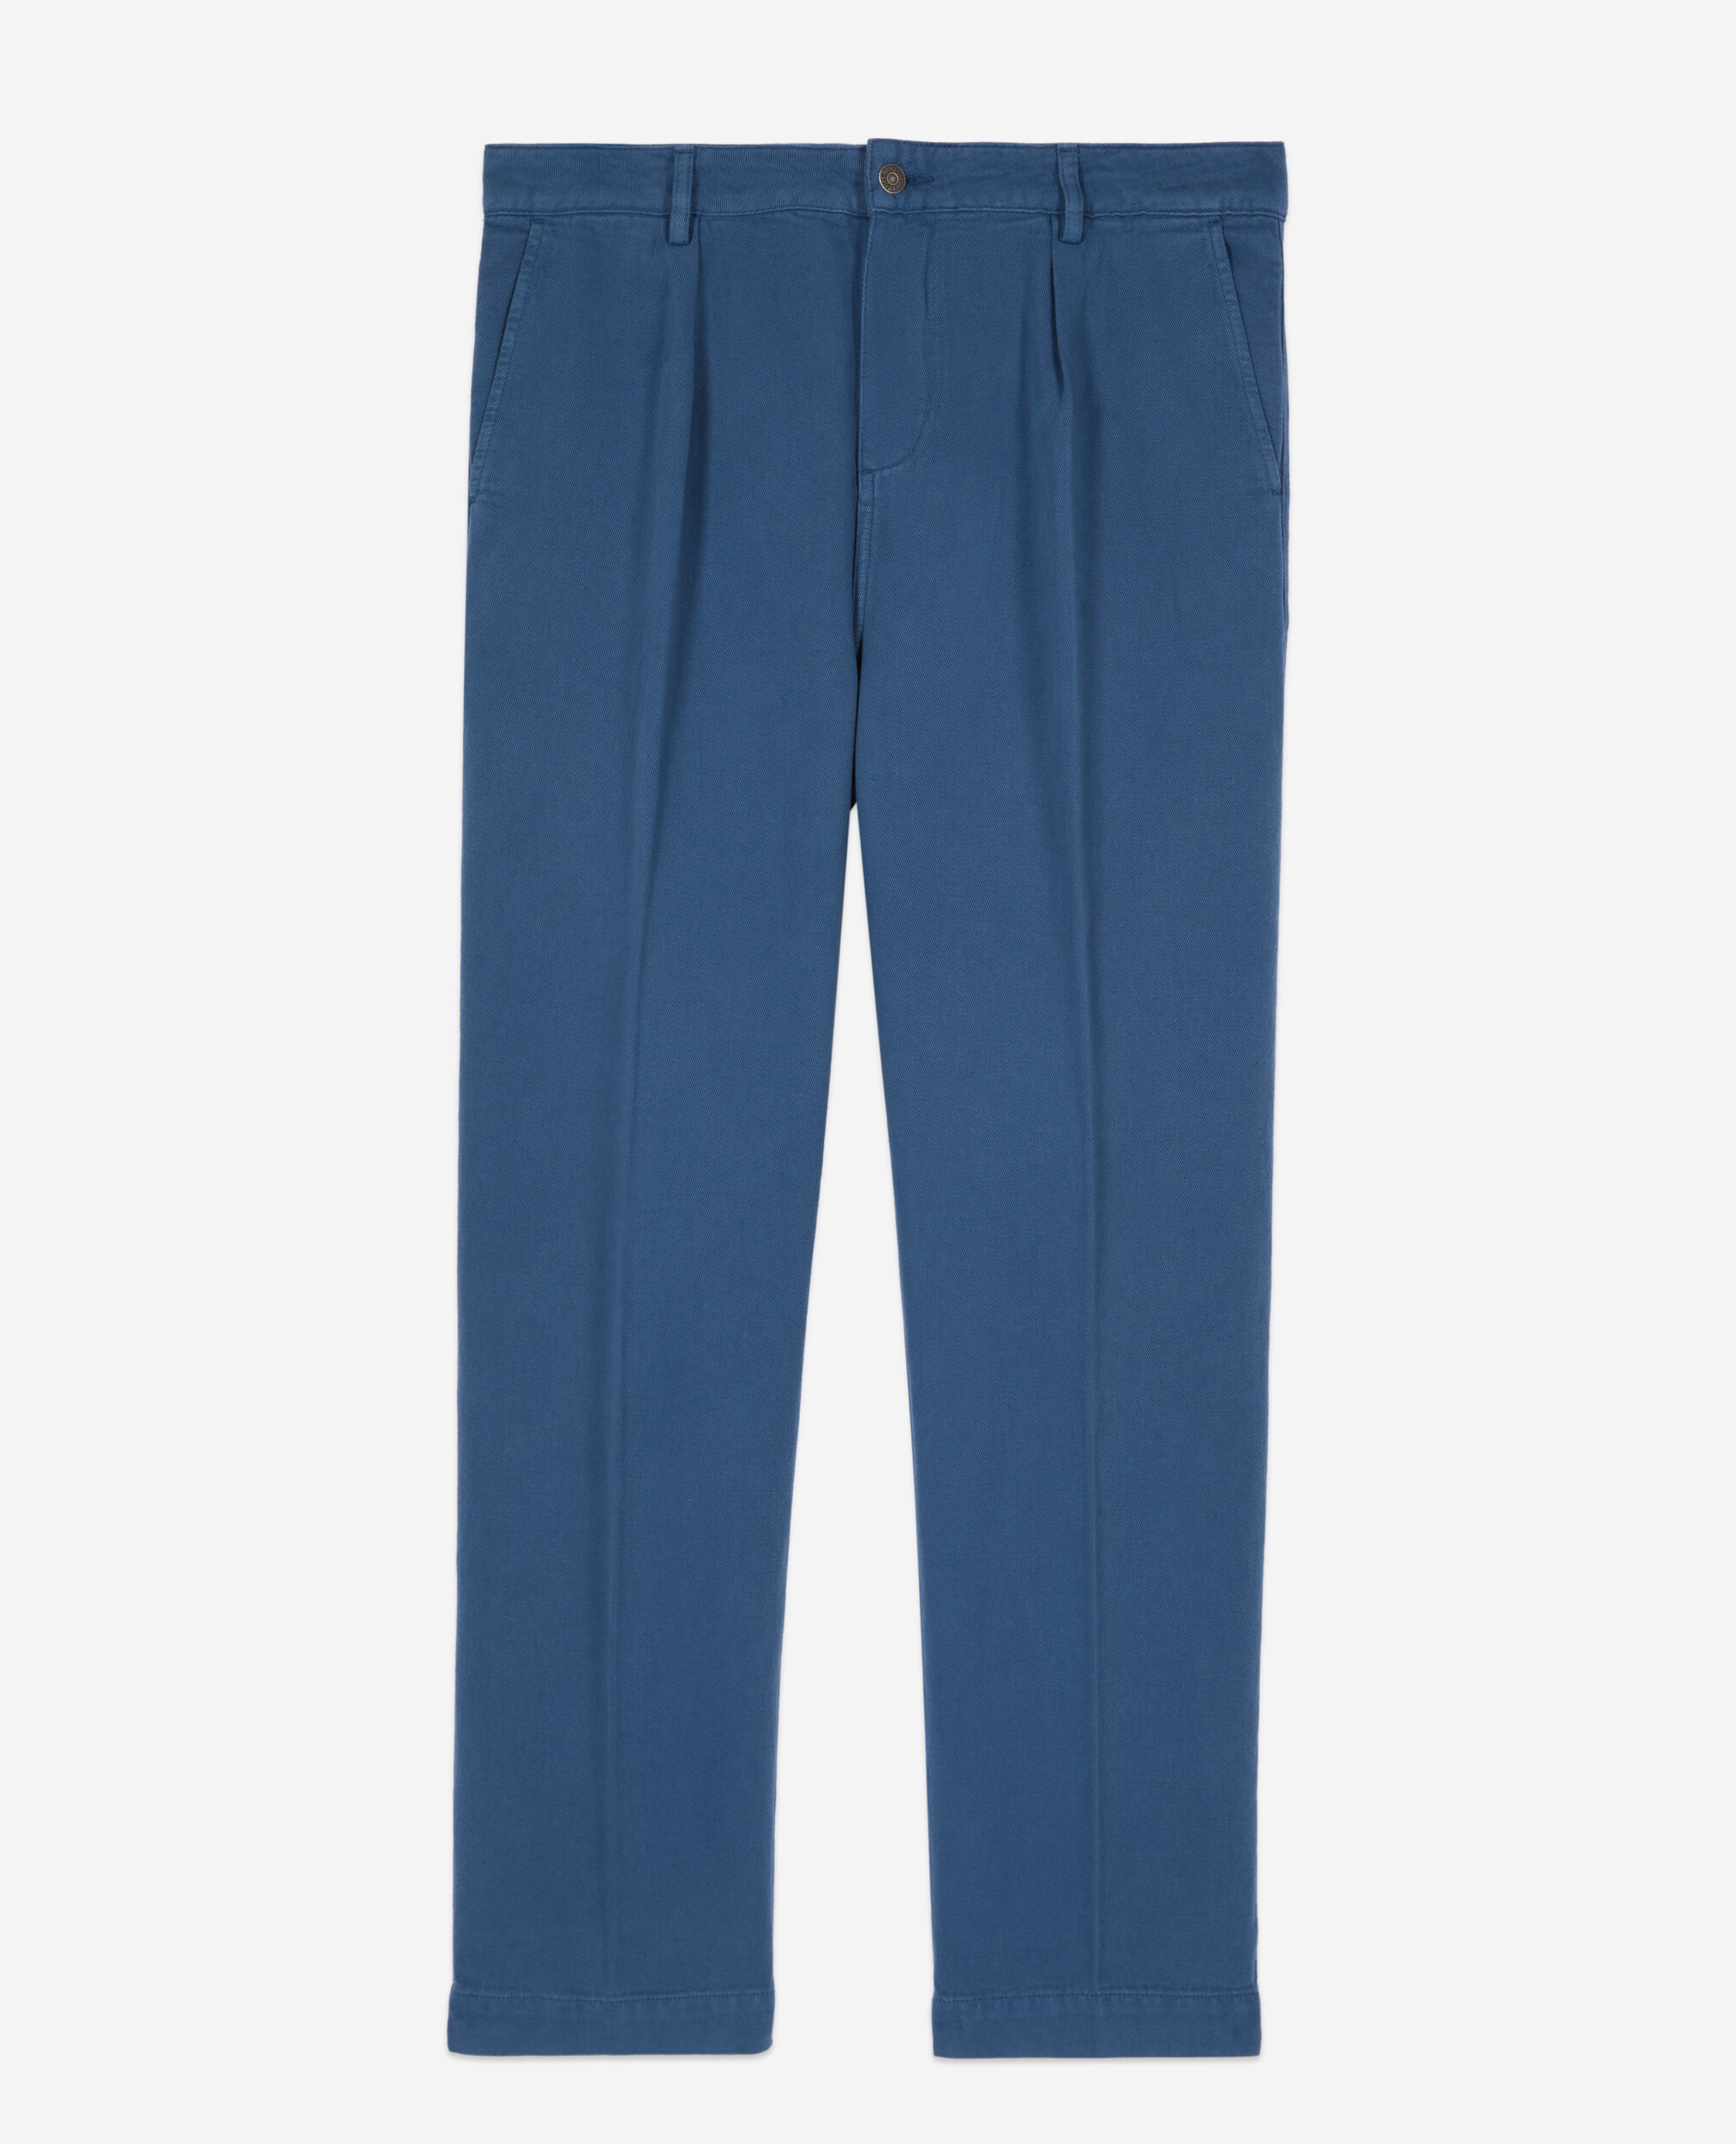 Pantalon bleu marine en coton et lin avec pinces, MIDDLE NAVY, hi-res image number null